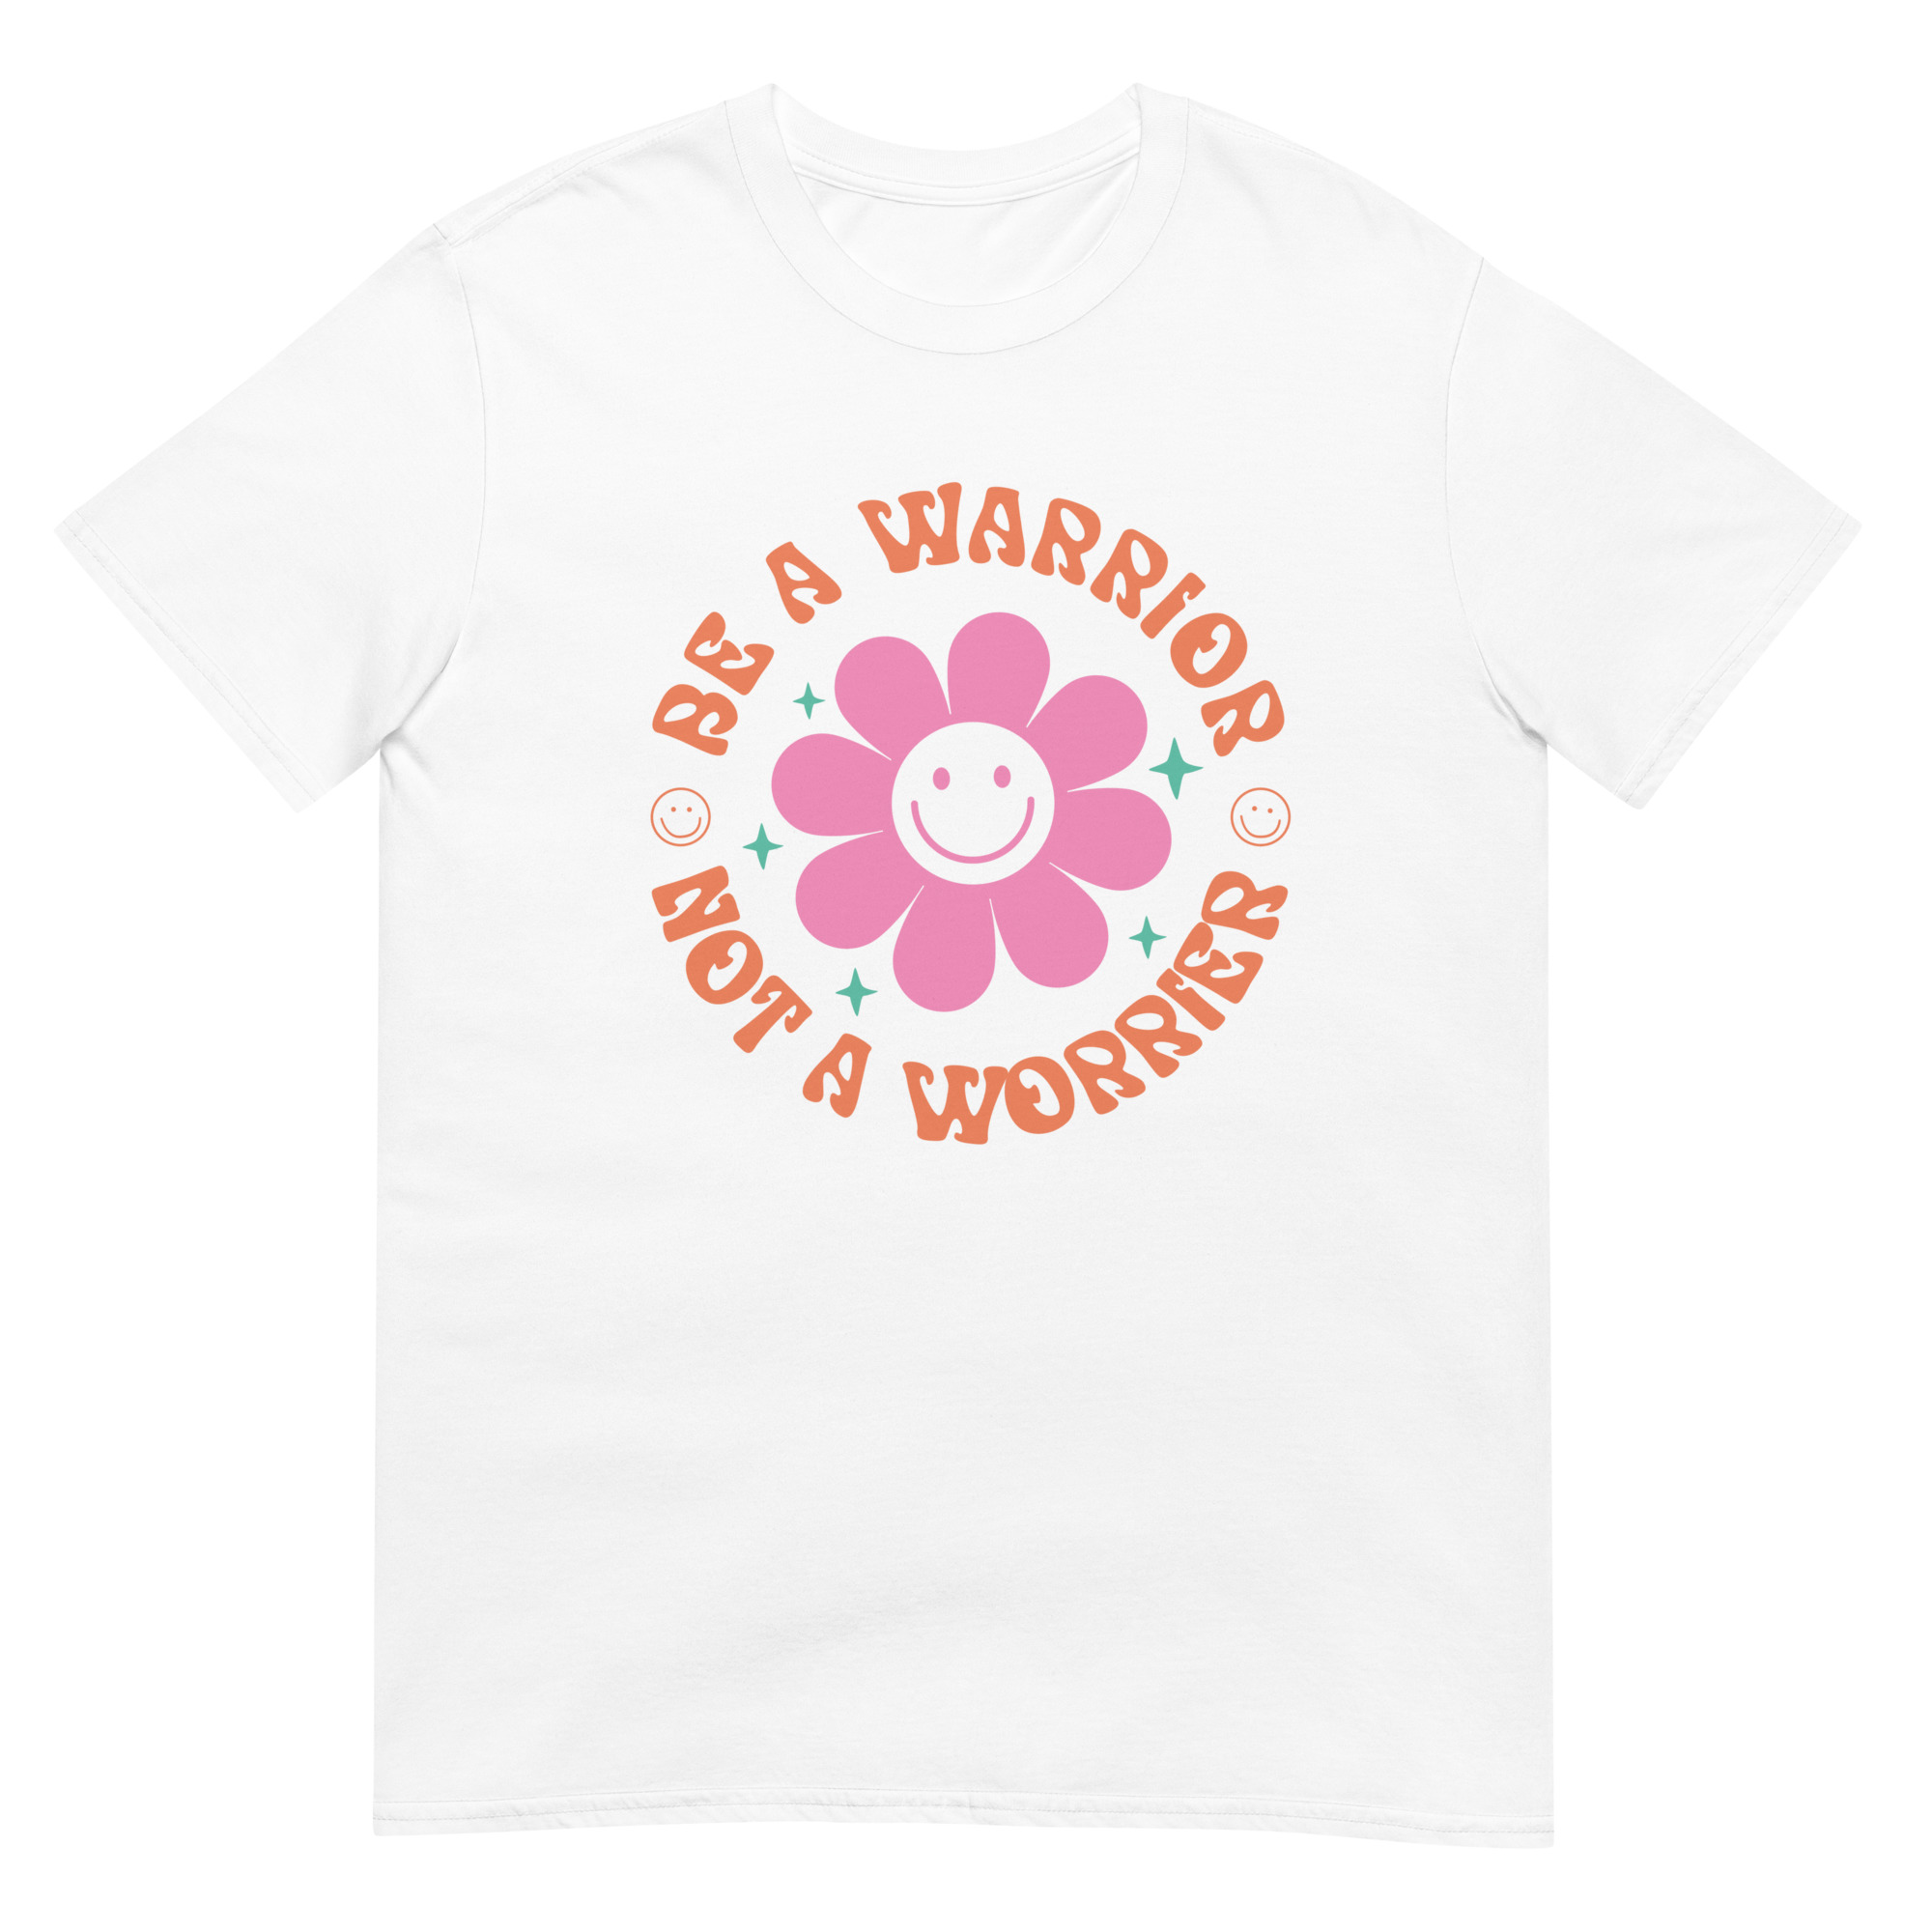 Be A Warrior Not A Worrier - Motivational Quote T-Shirt